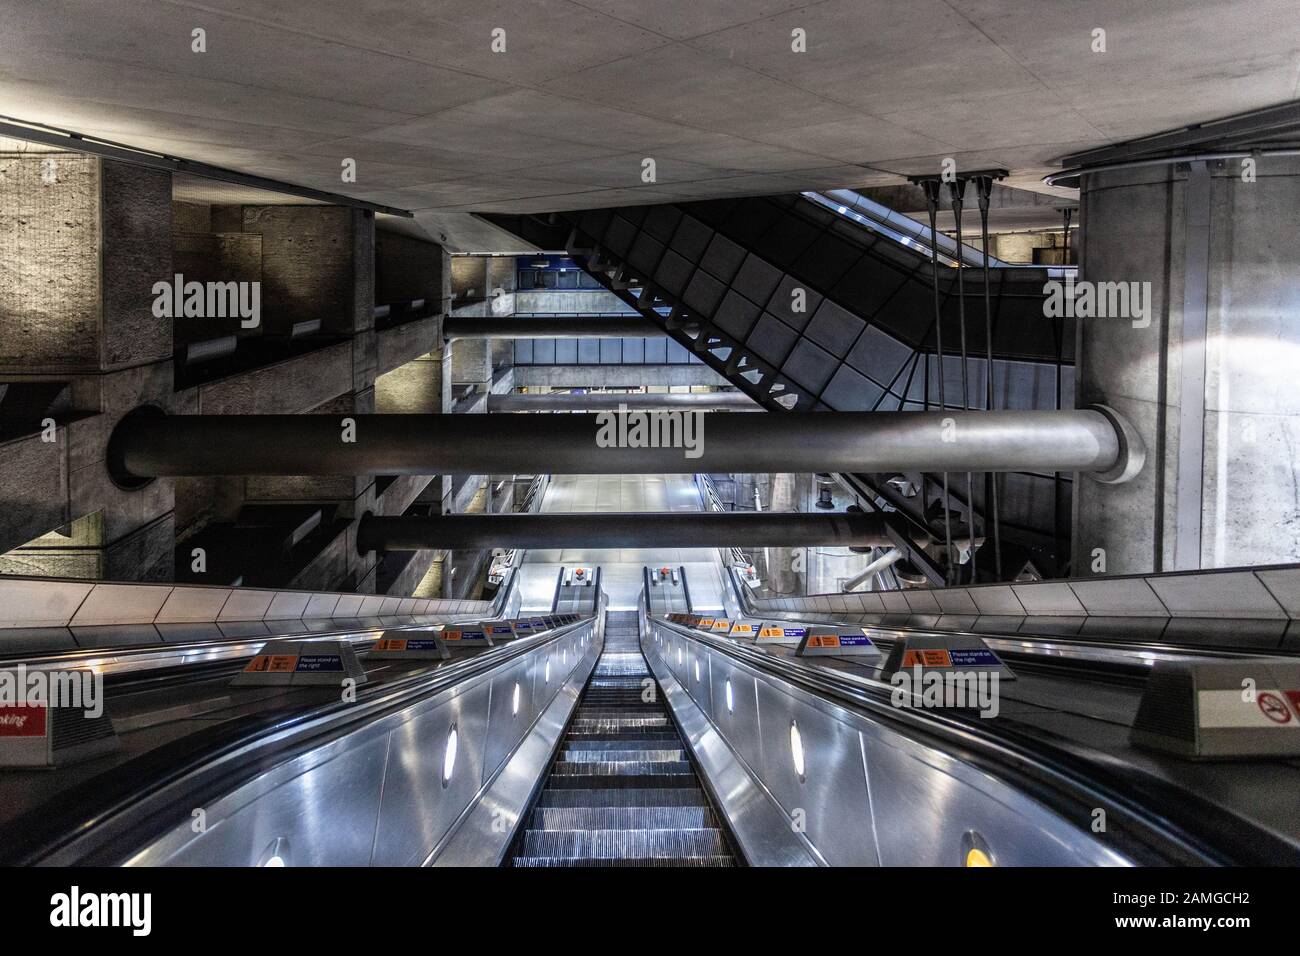 Escaliers mécaniques à l'intérieur de la station de métro Westminster, Londres, Angleterre, Royaume-Uni. Banque D'Images